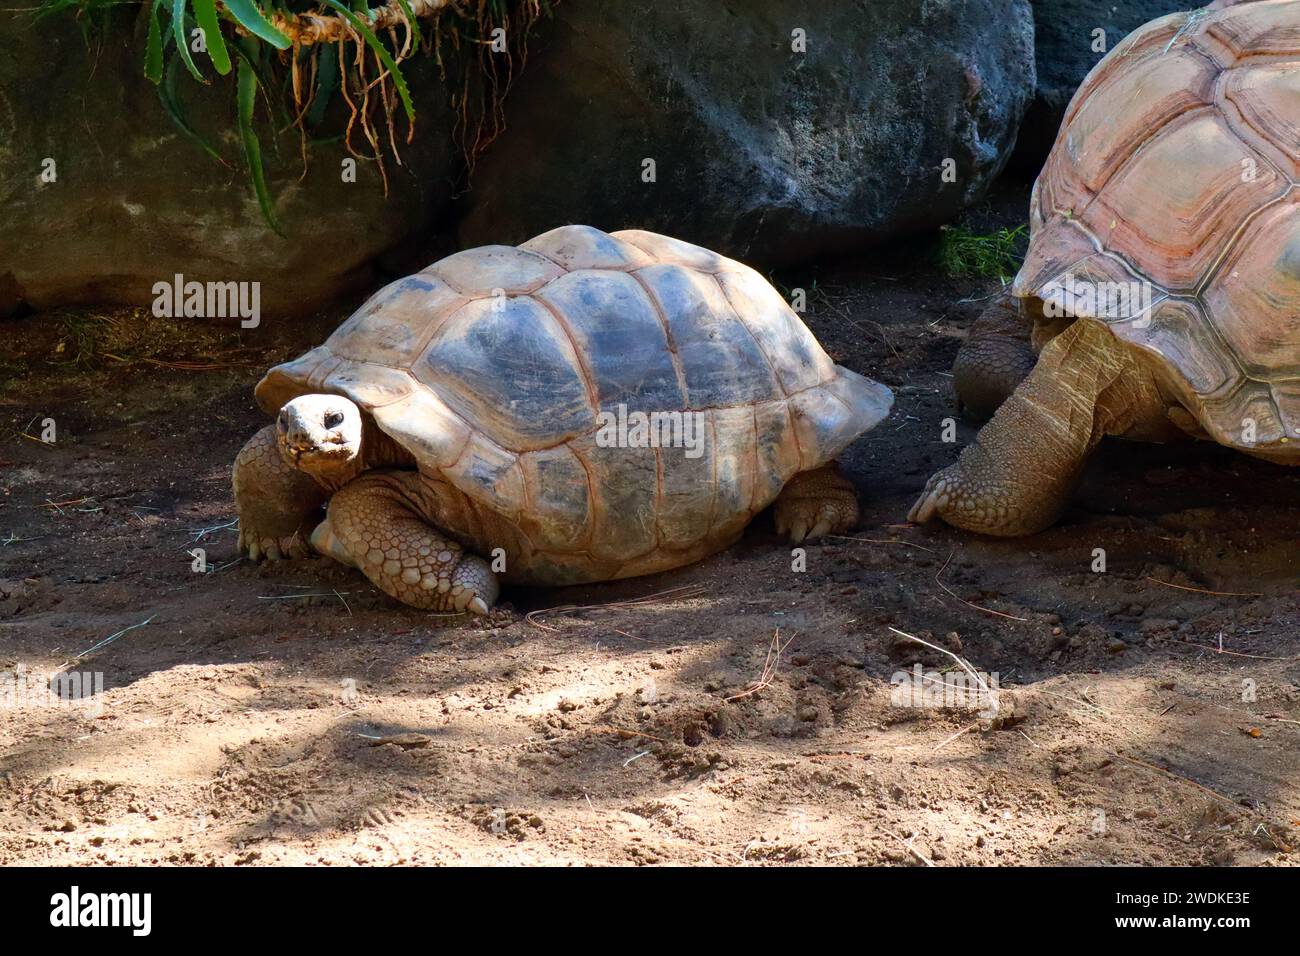 Tortue Aldabra (Geochelone gigantea), est une espèce de tortue de la famille des Testudinidae des îles de l'atoll d'Aldabra aux Seychelles Banque D'Images